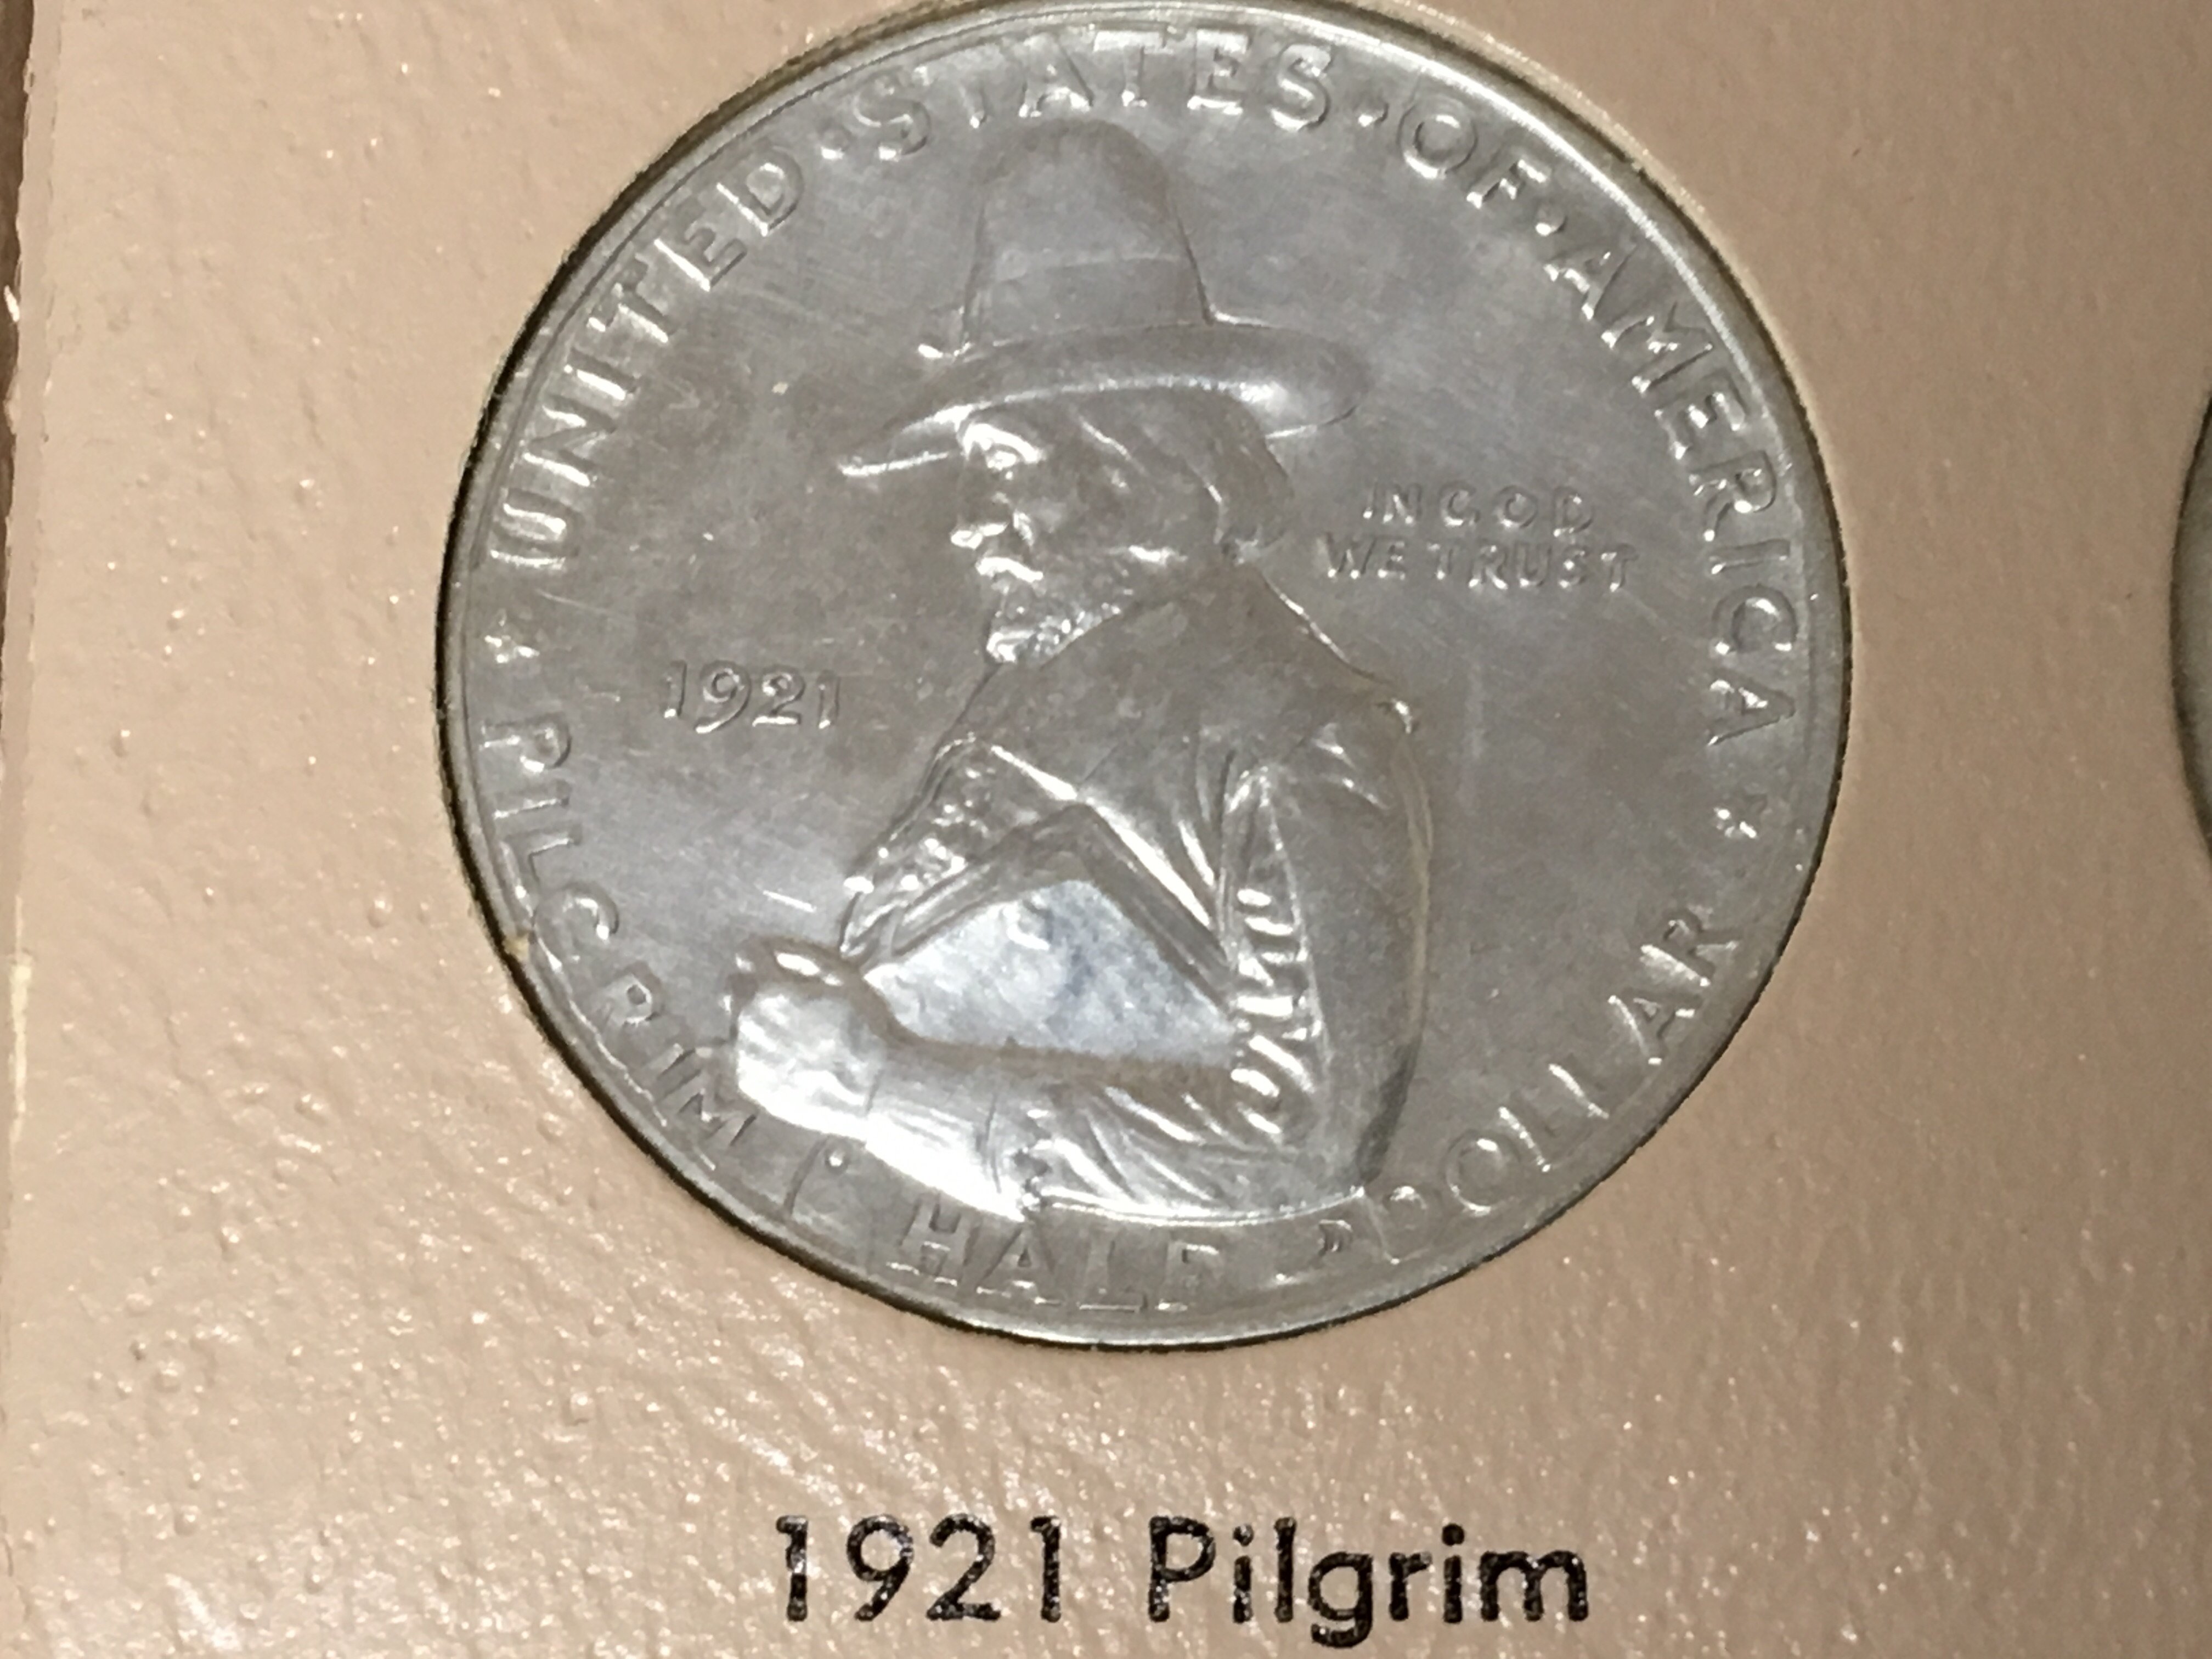 A 1921 American Commemorative half dollar the 1921